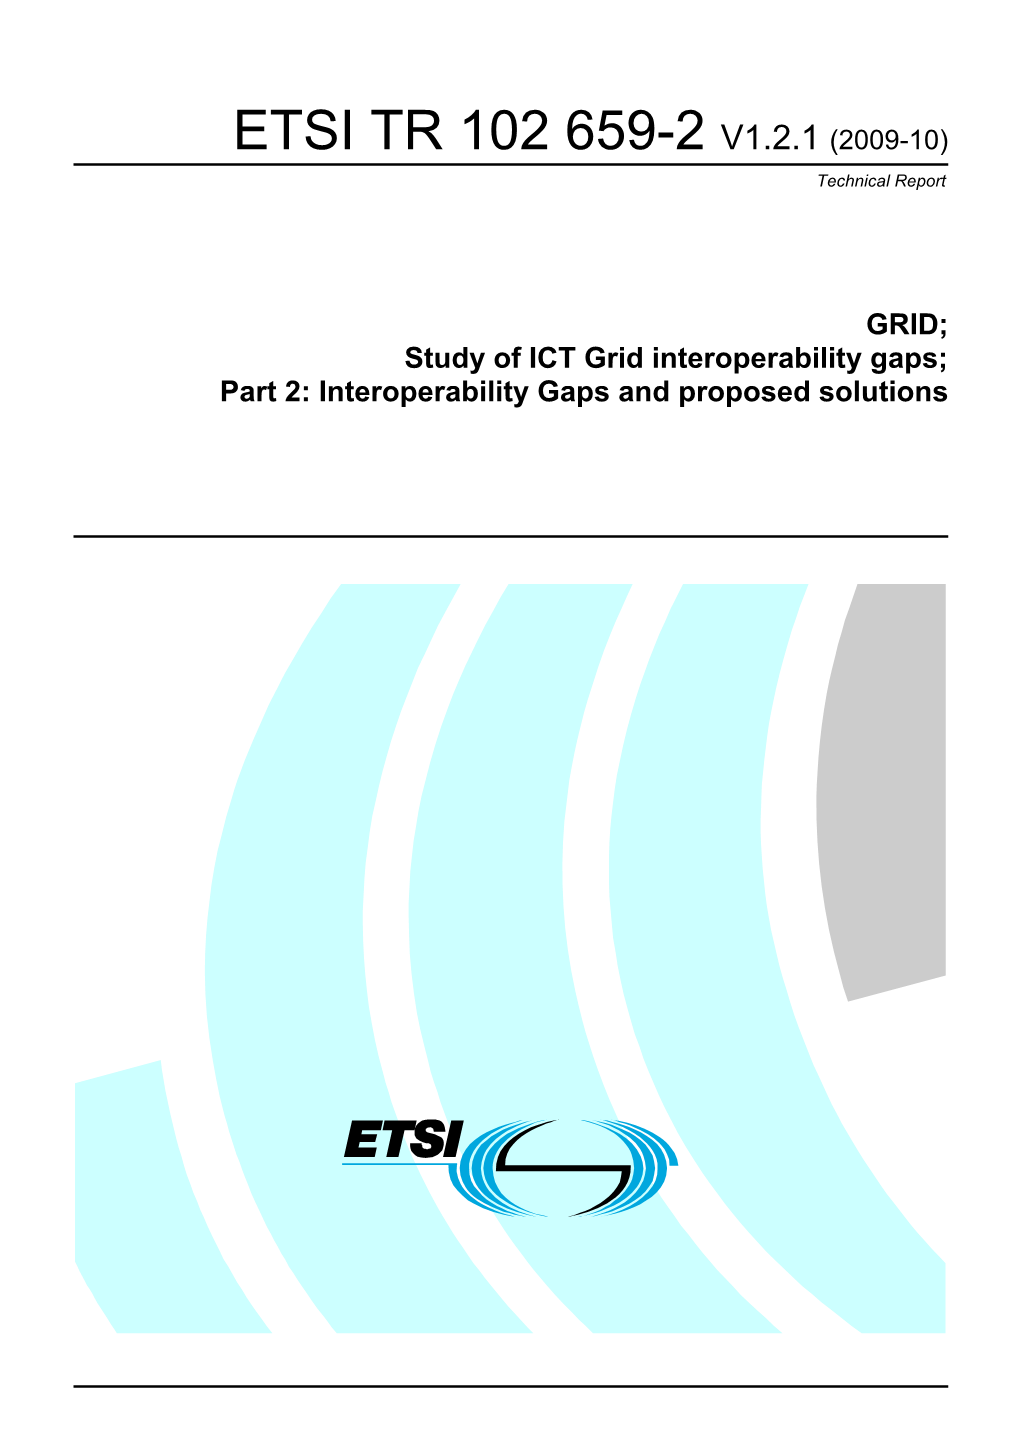 ETSI TR 102 659-2 V1.2.1 (2009-10) Technical Report